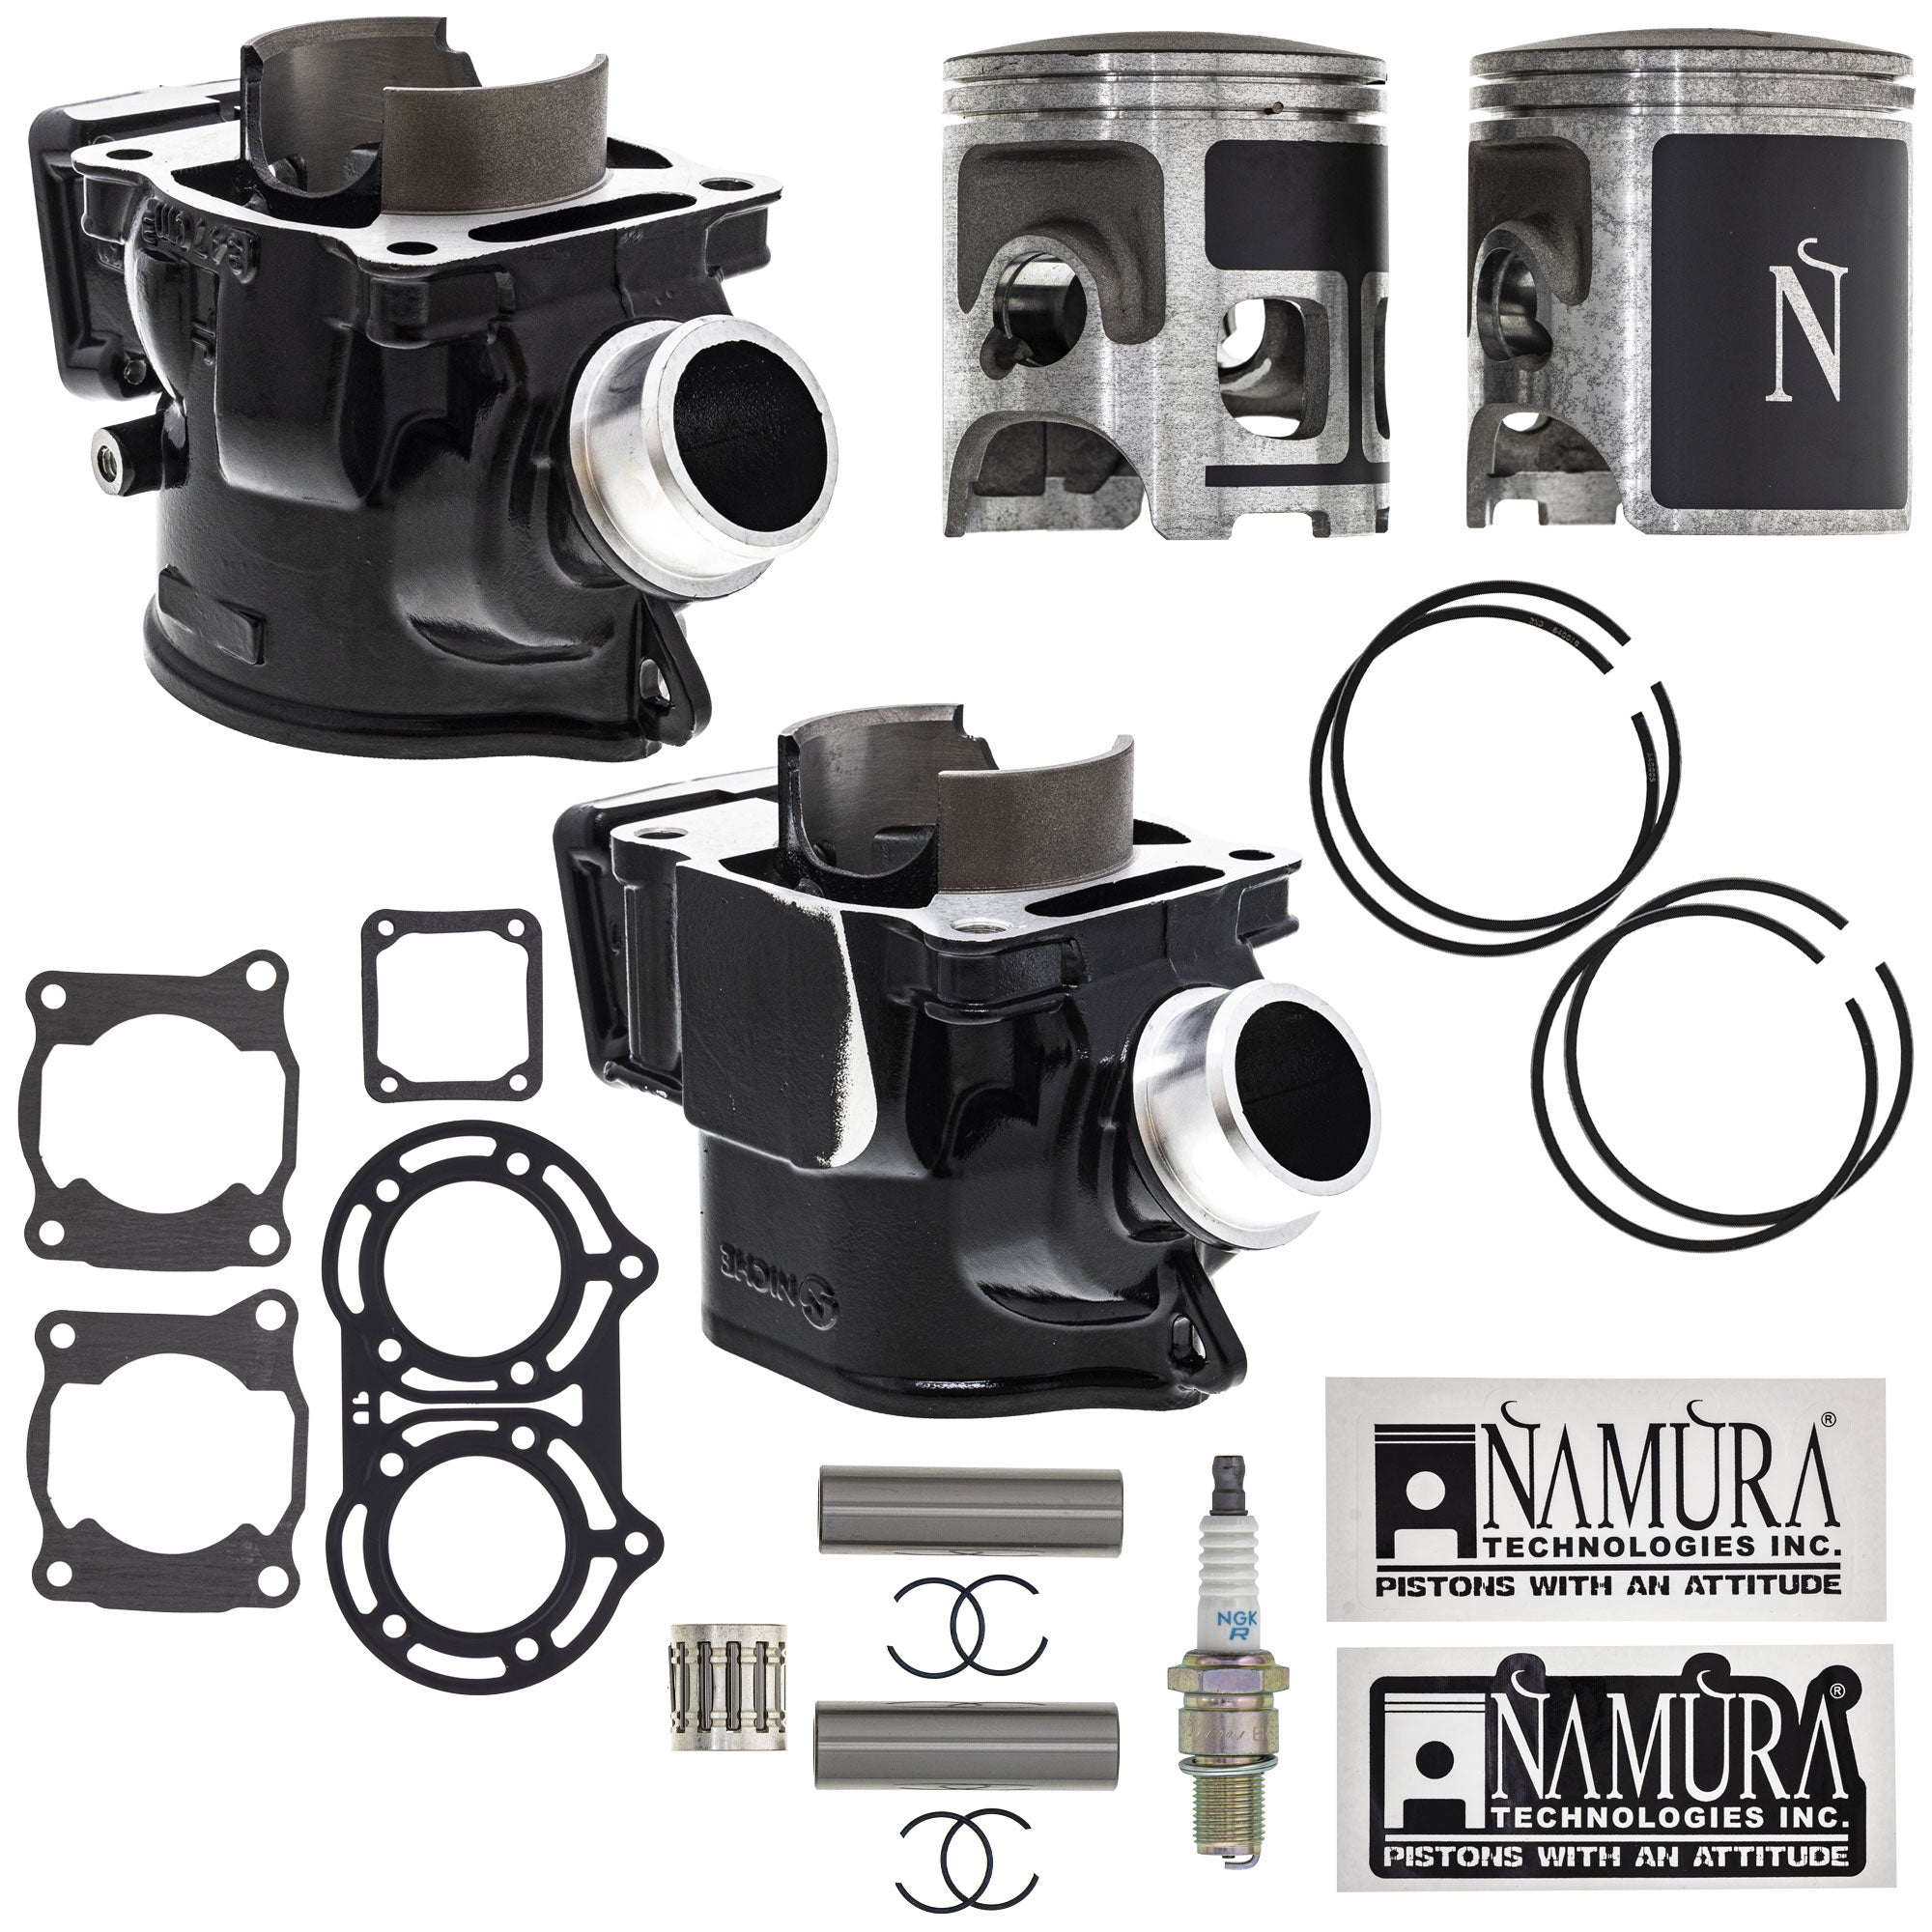 Cylinder Namura Piston Gasket Spark Plug Kit for Banshee NICHE MK1012549